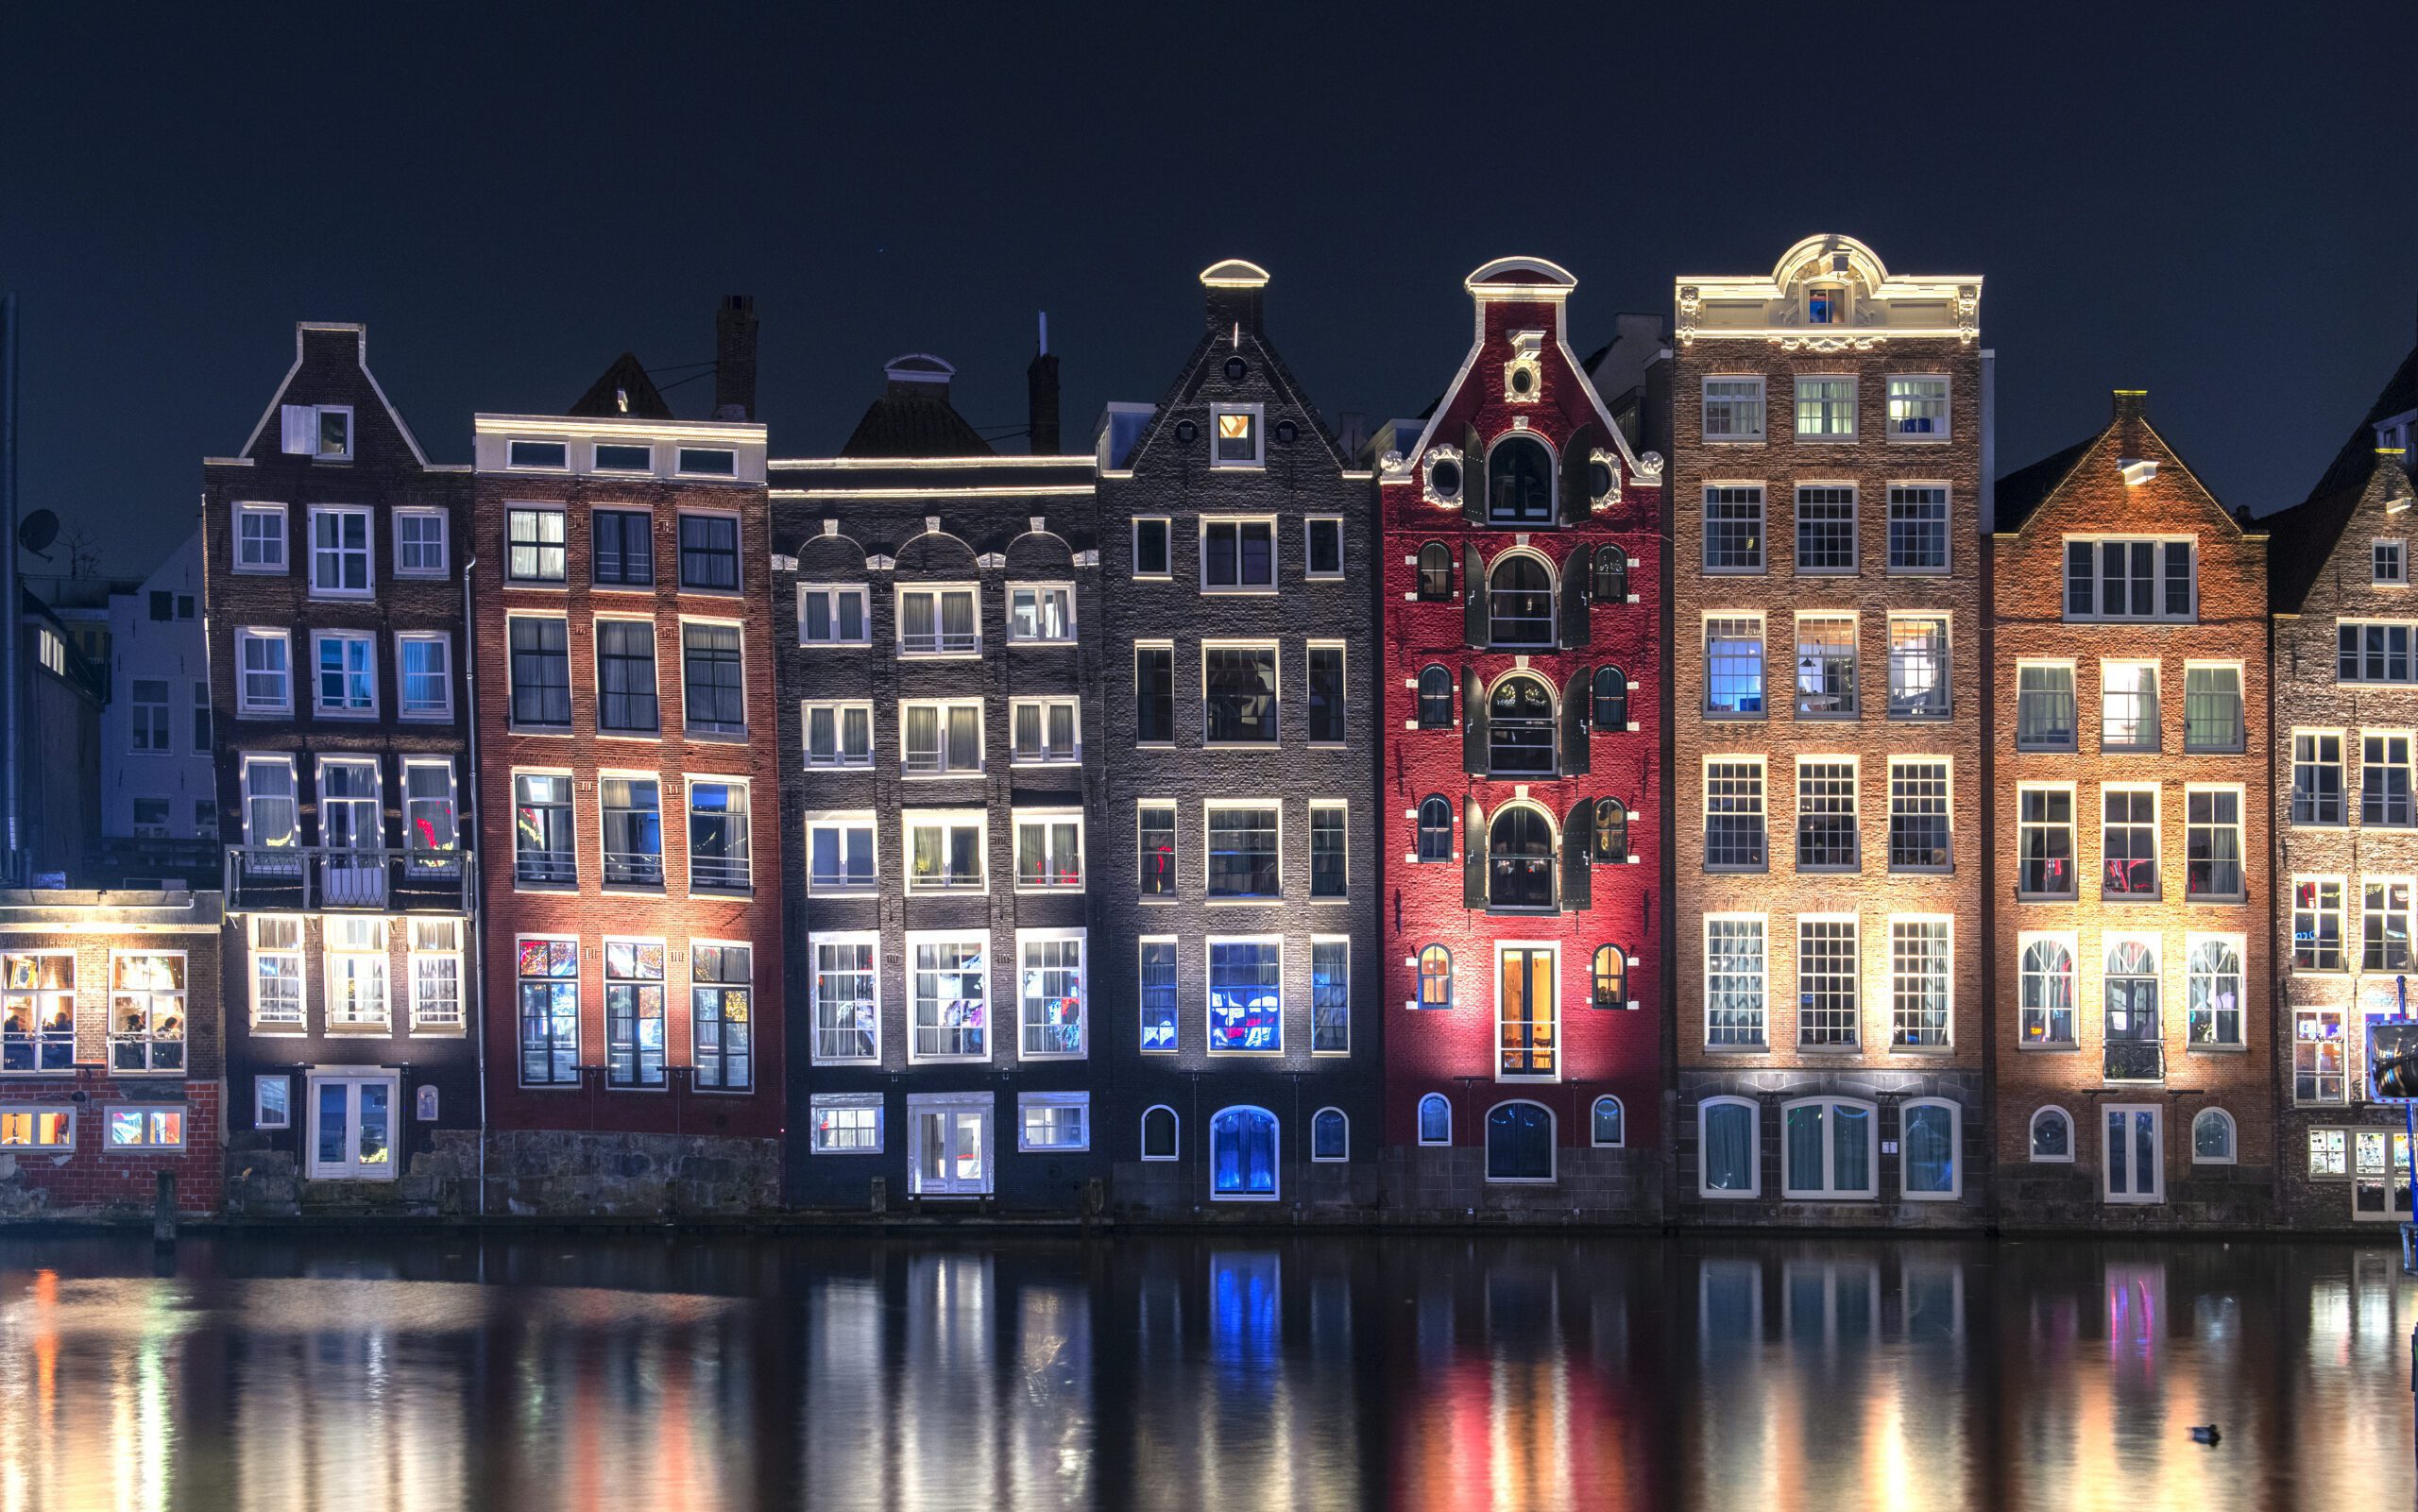 물위에 비춰진 전형적인 암스테르담의 주택들